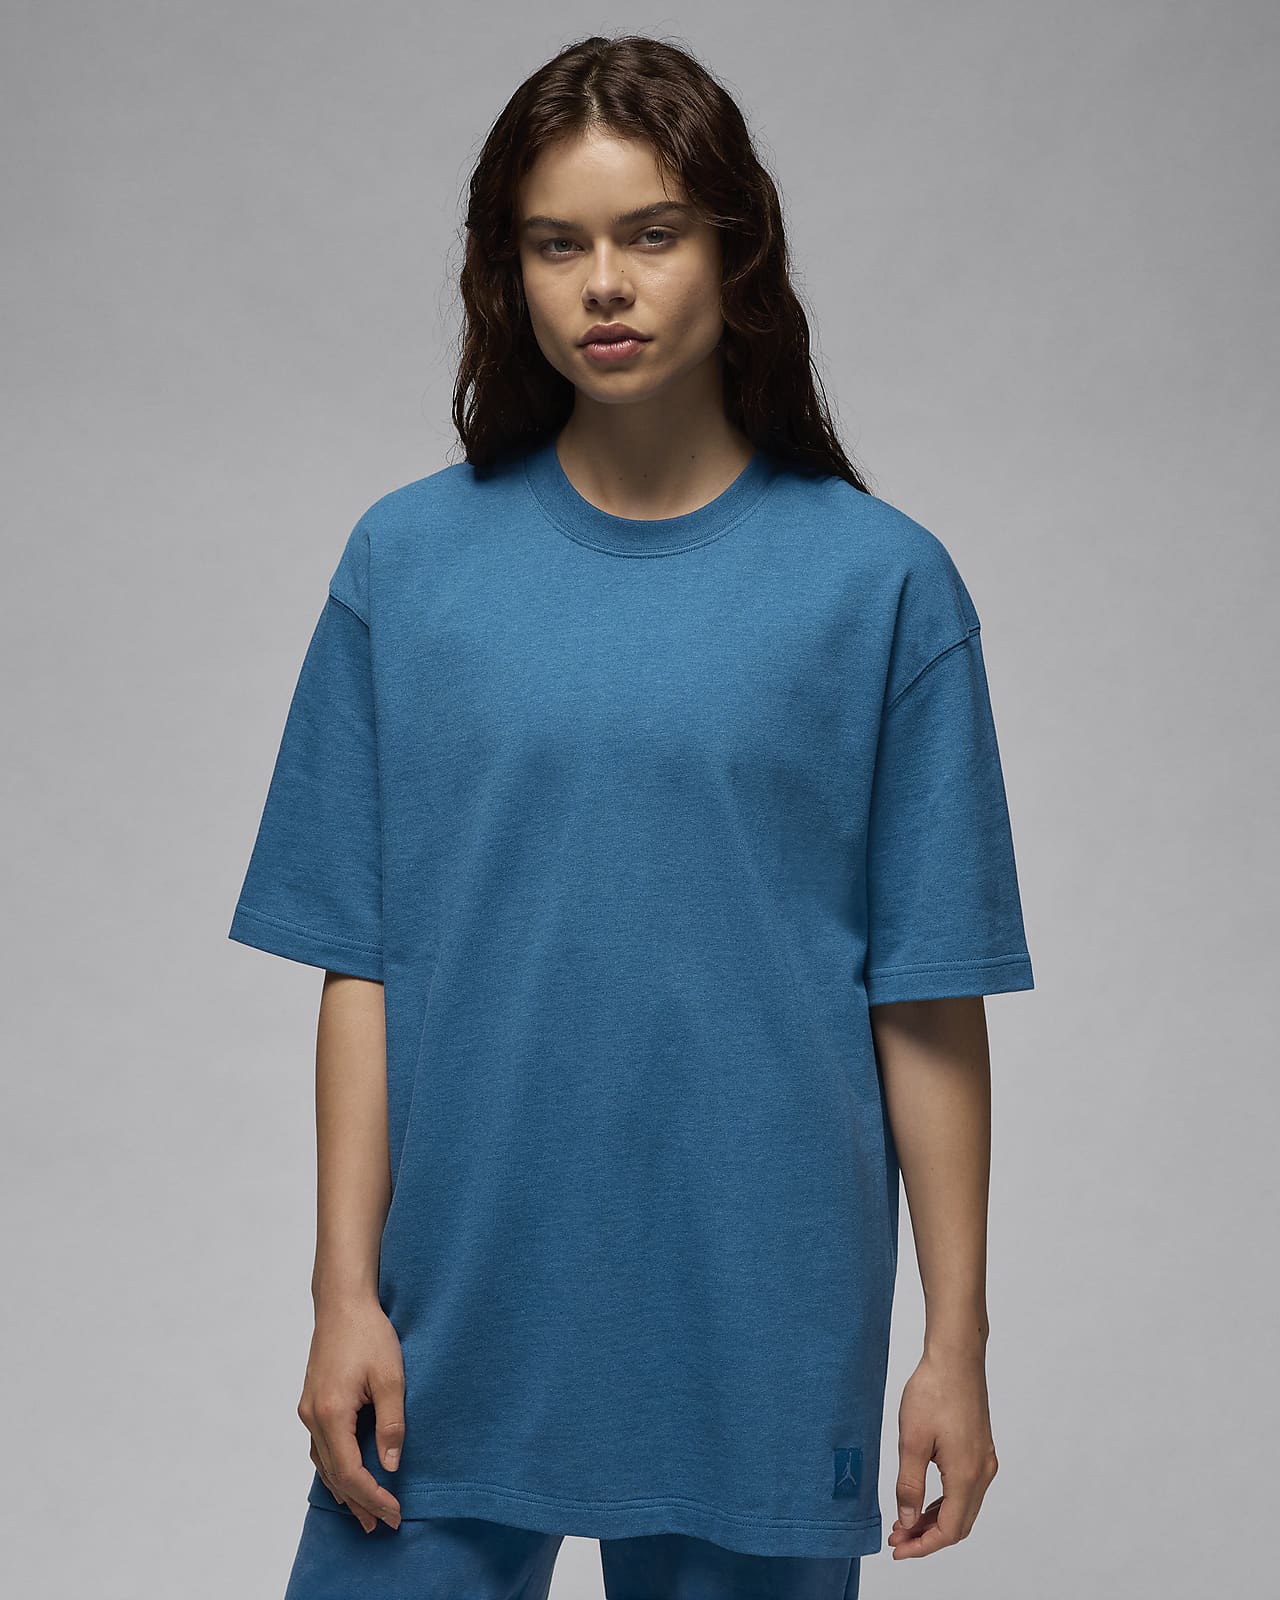 Jordan Essentials Camiseta oversize - Mujer